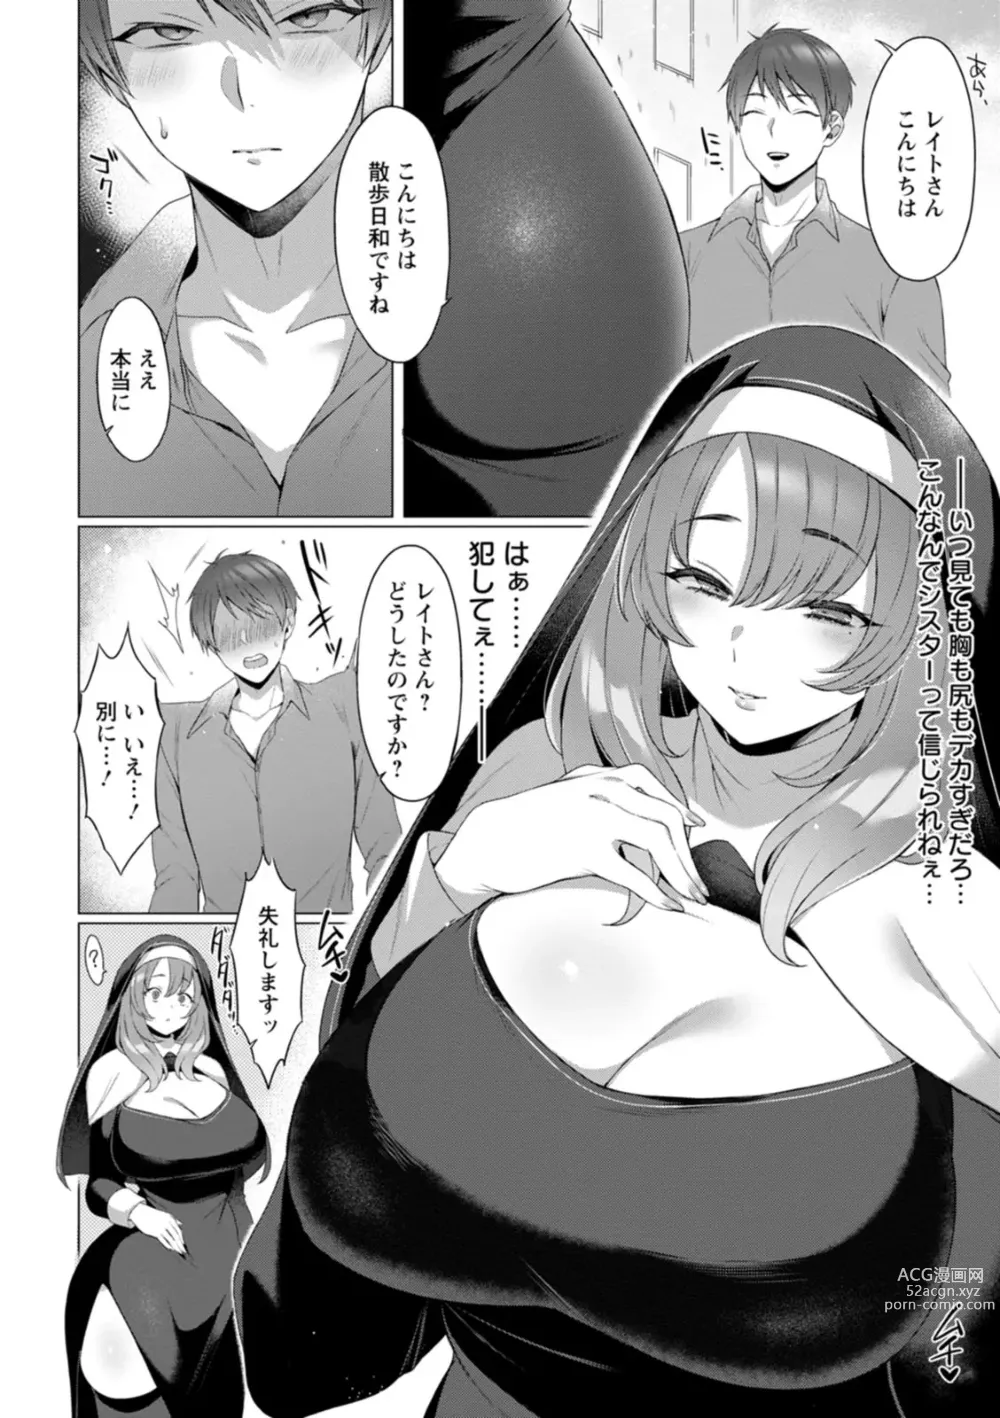 Page 8 of manga Hyakka Inran